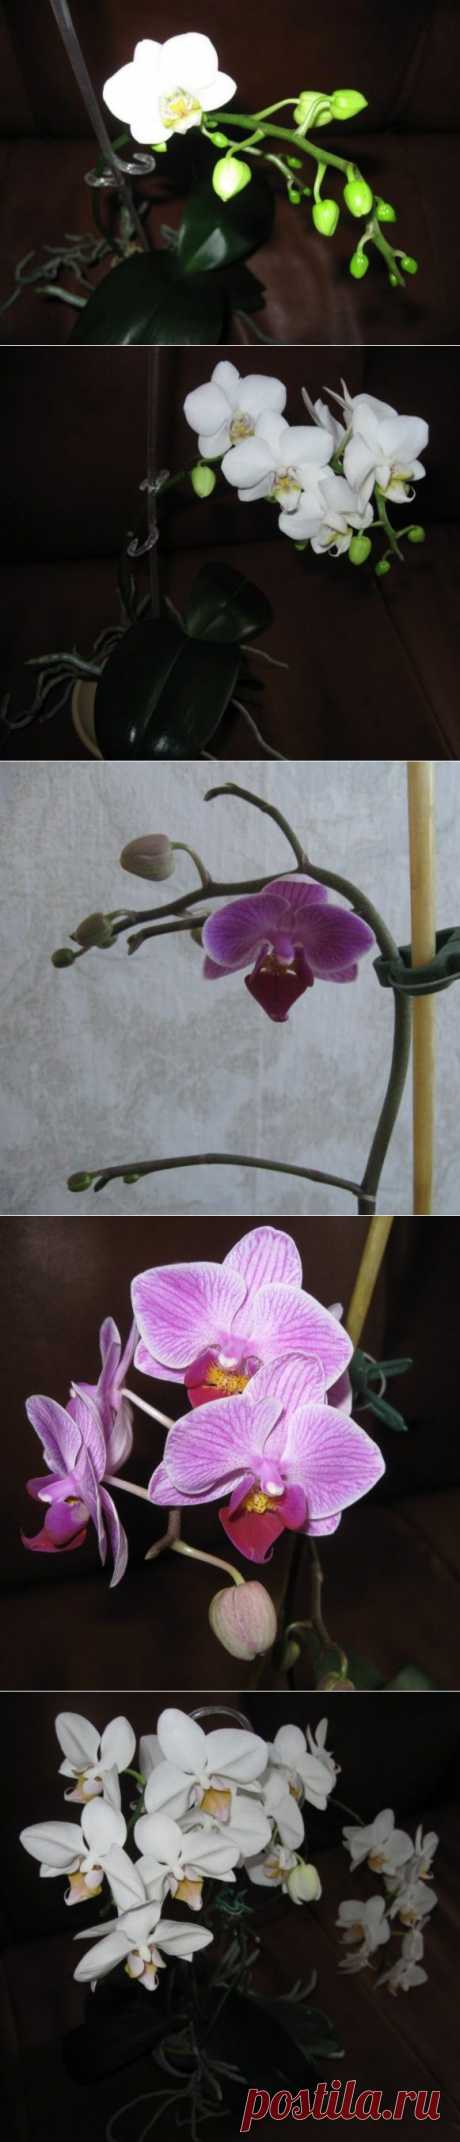 Цвет фаленопсиса и орхидеек | САД НА ПОДОКОННИКЕ